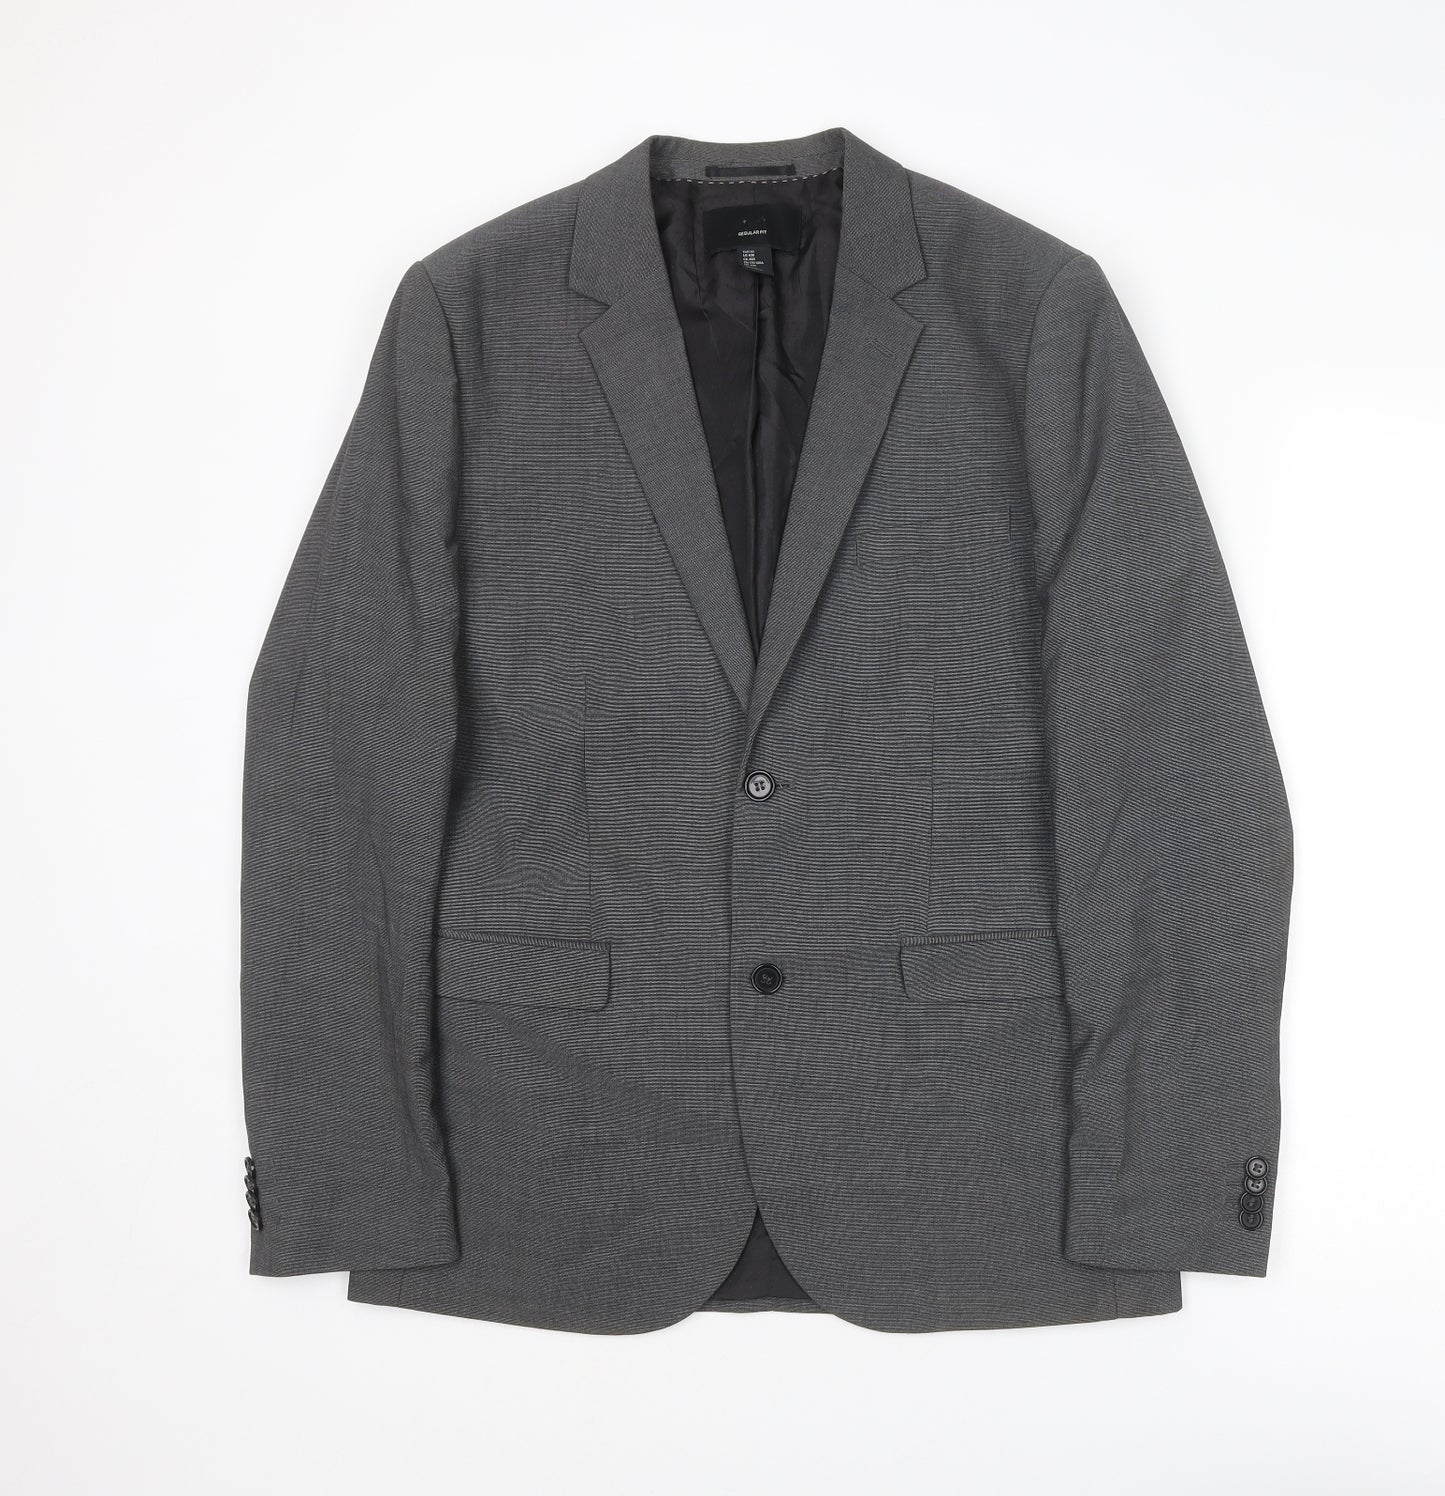 H&M Mens Grey Polyester Jacket Suit Jacket Size L Regular